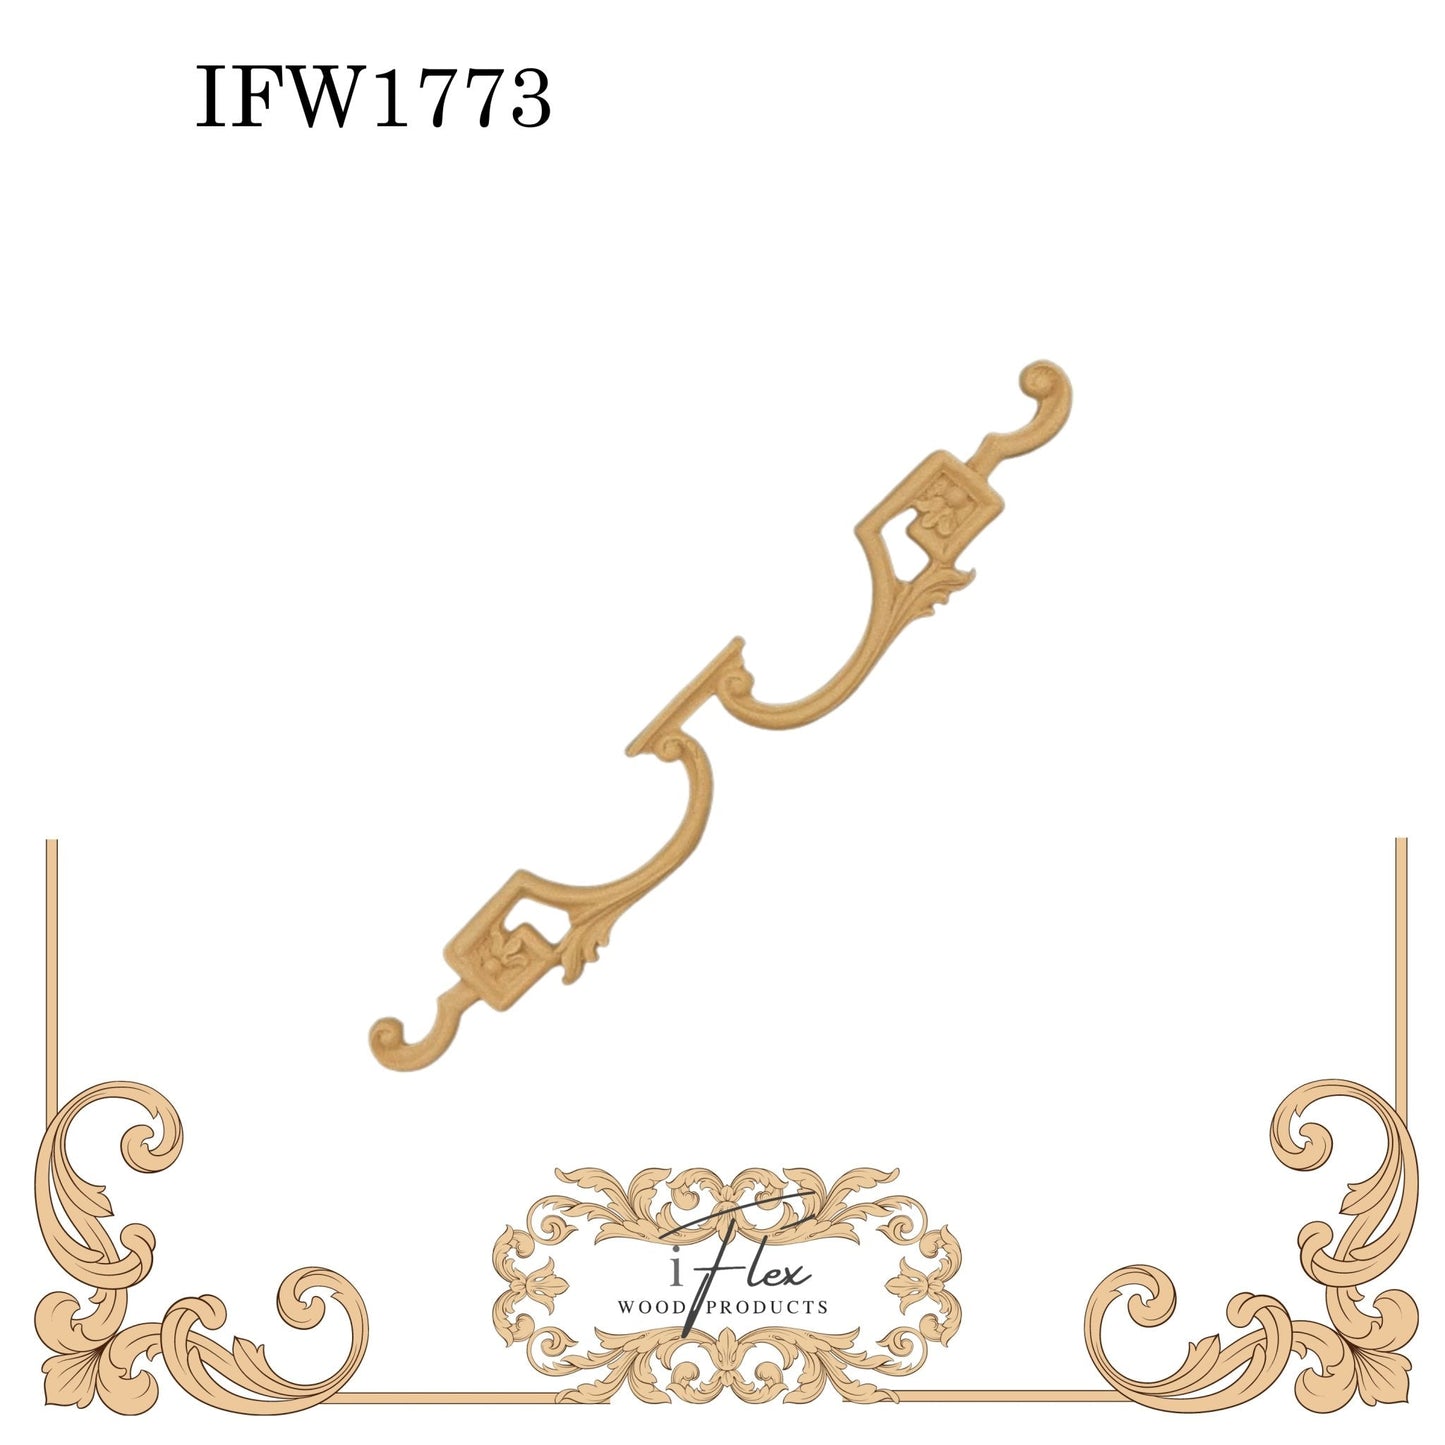 IFW 1773